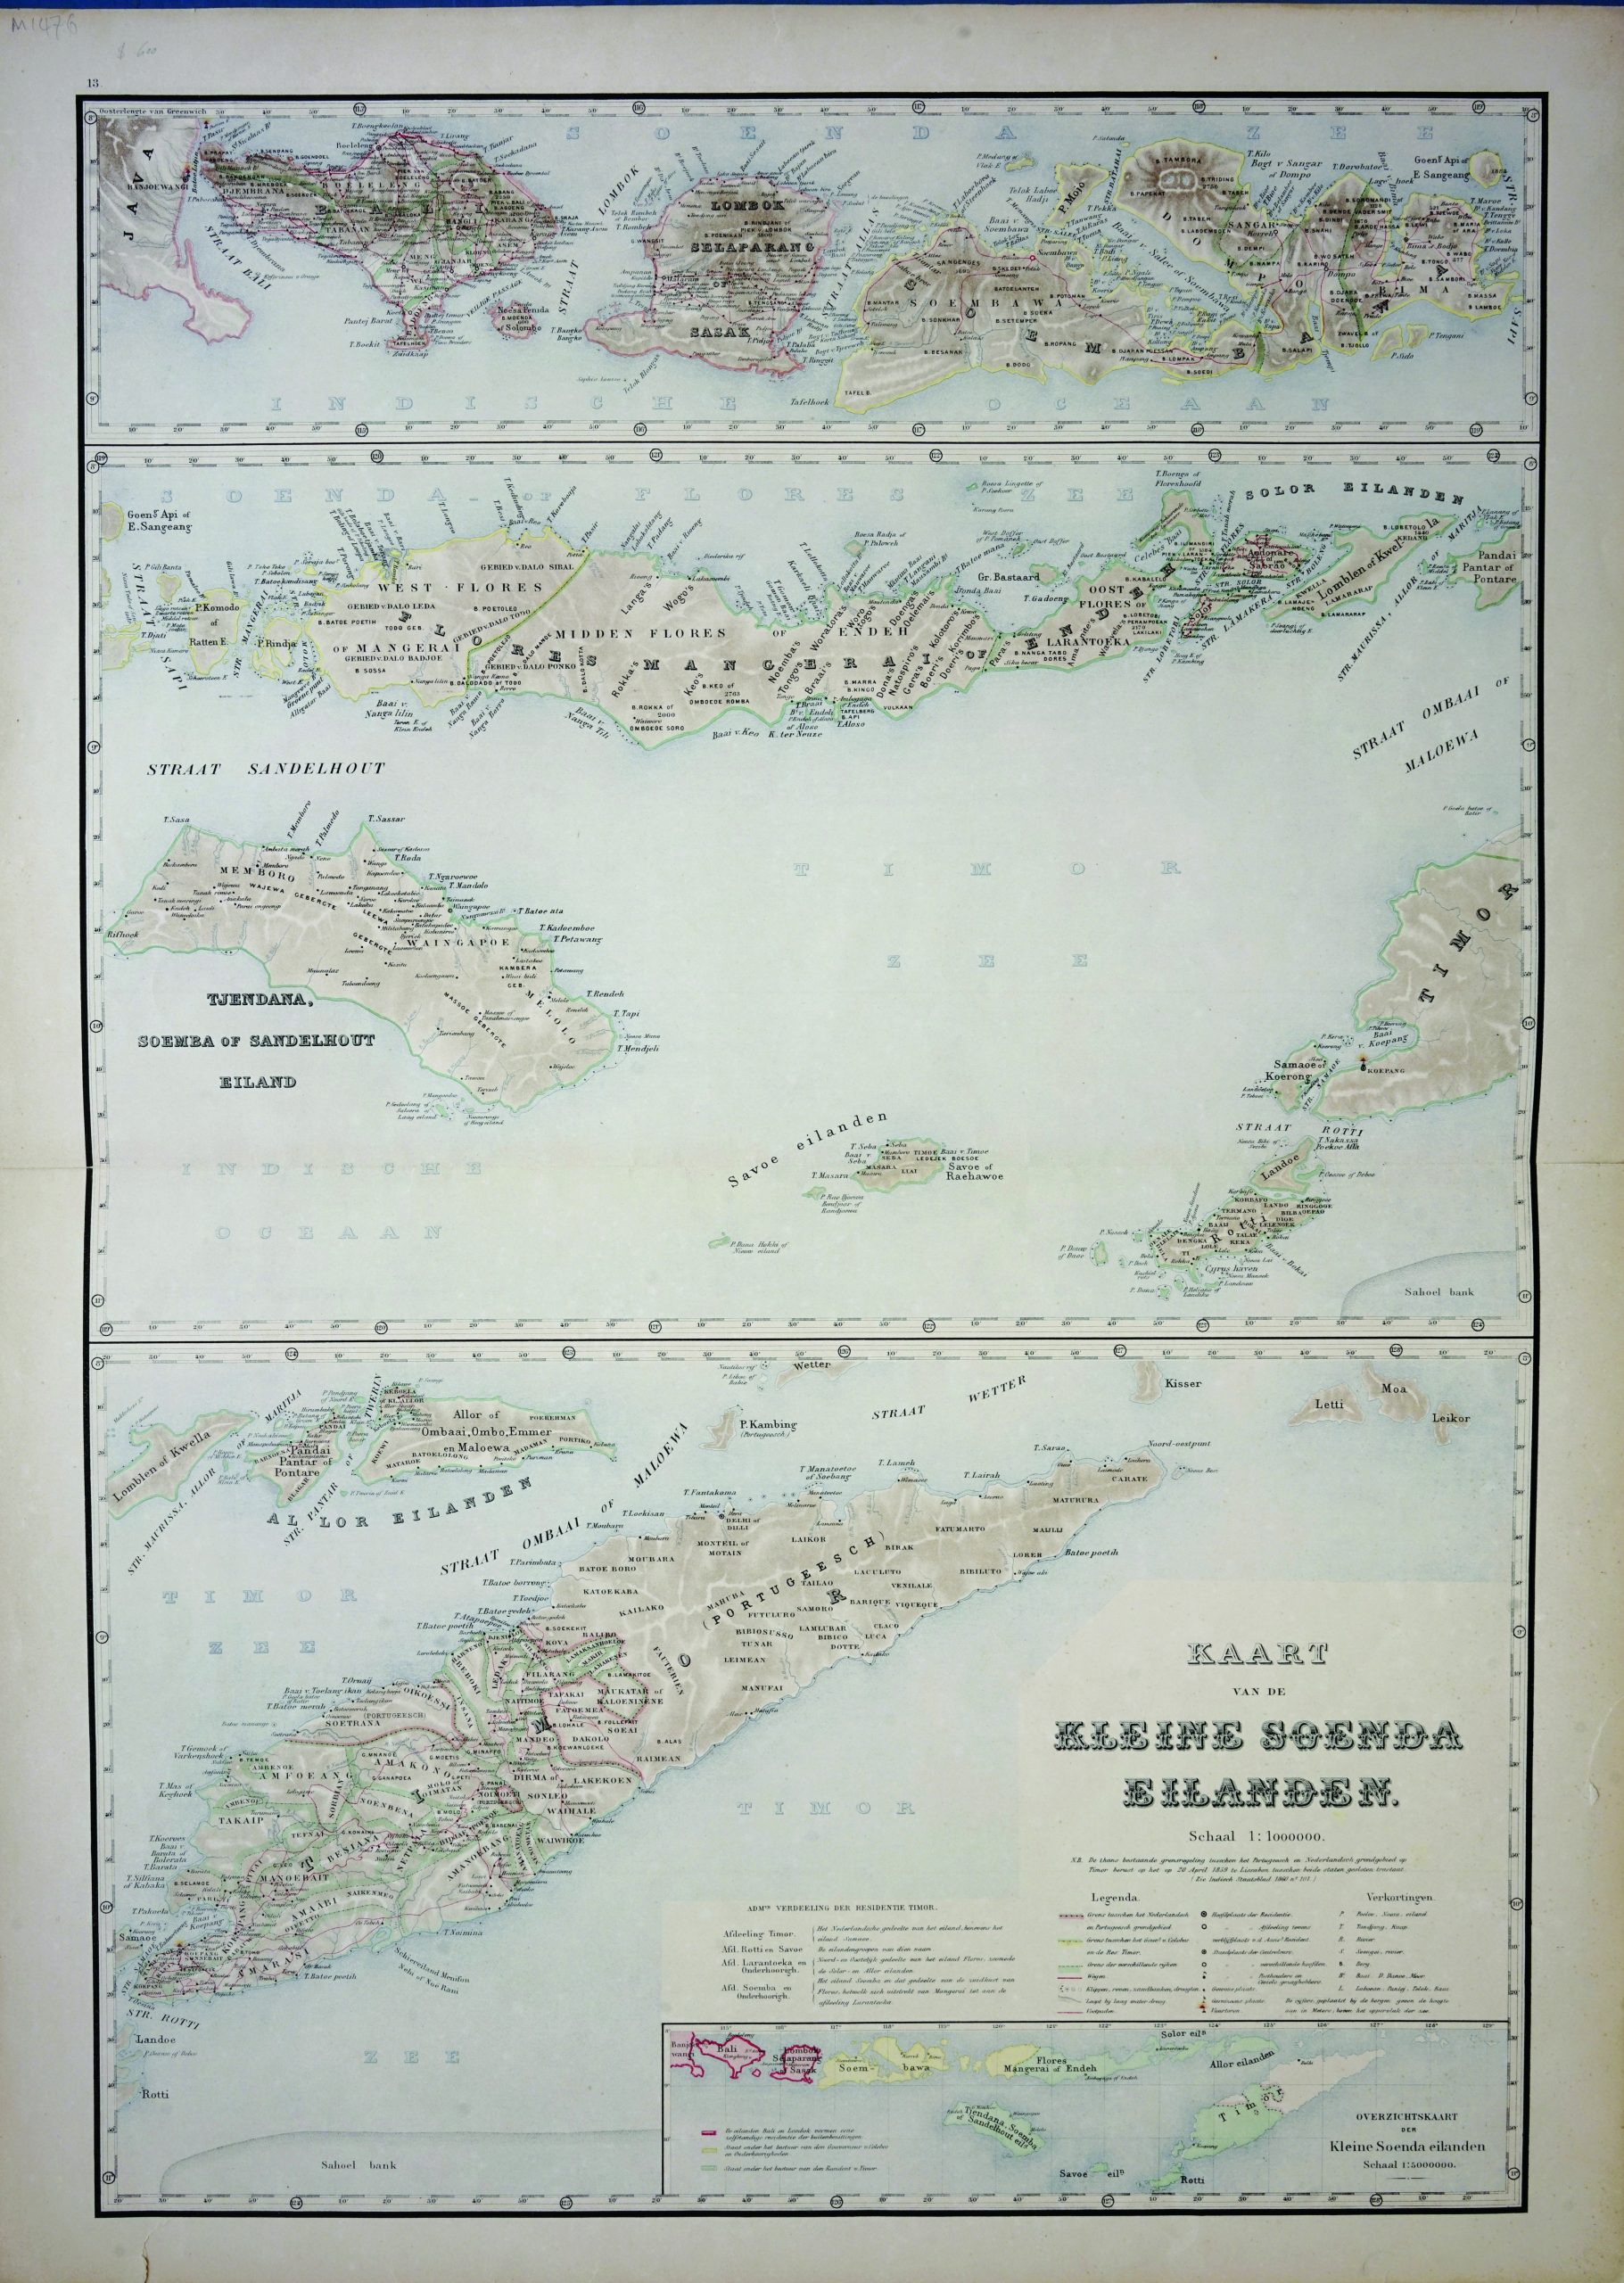 Map of Lesser Sunda Islands - Stemfoort & Siethoff (c.1883-1885)